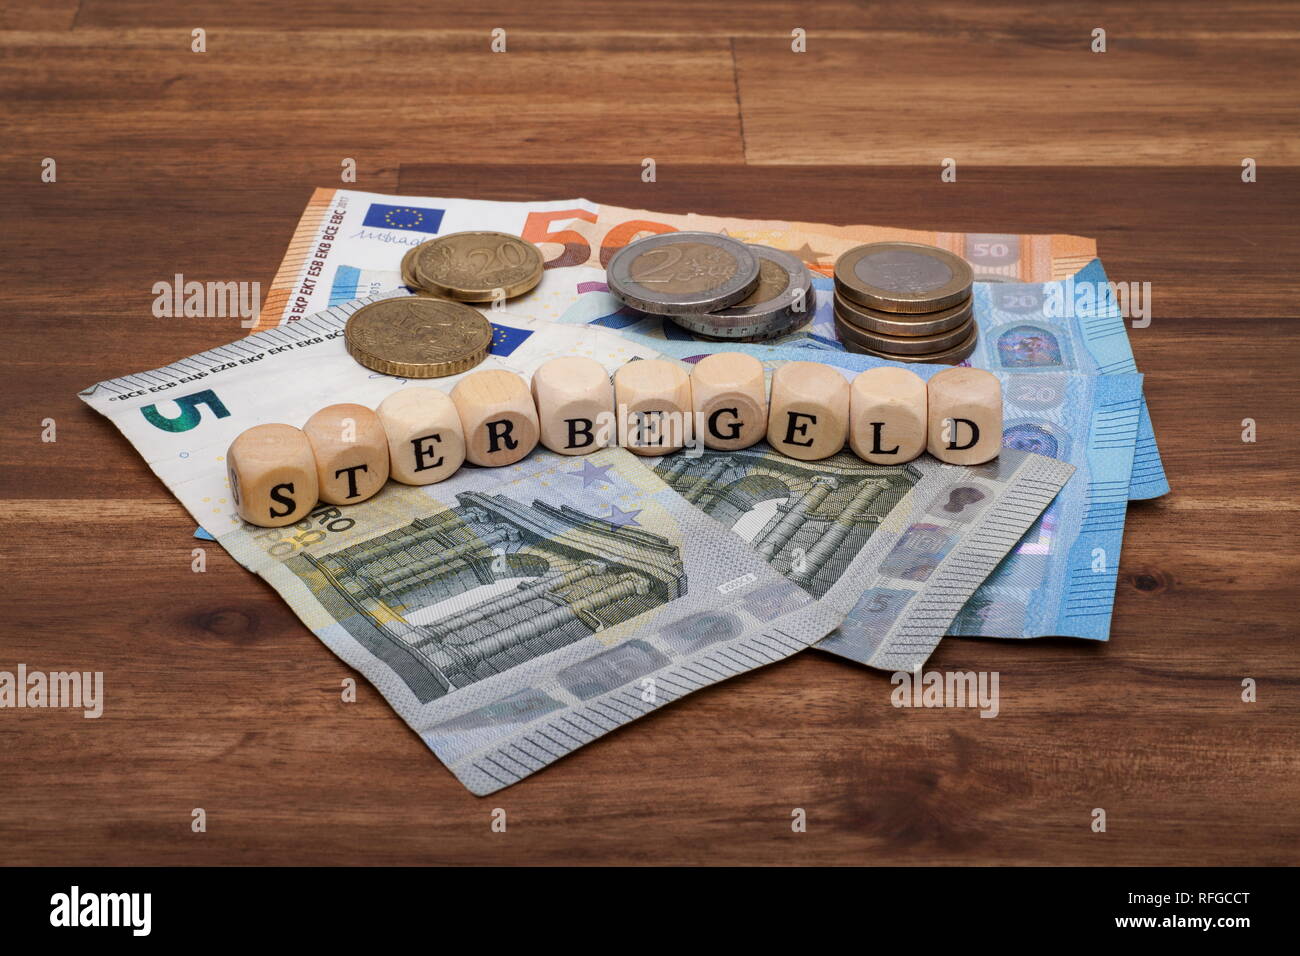 Die Euro Geldscheine und Münzen liegen auf dem Tisch mit dem Wort Sterbegeld Stock Photo